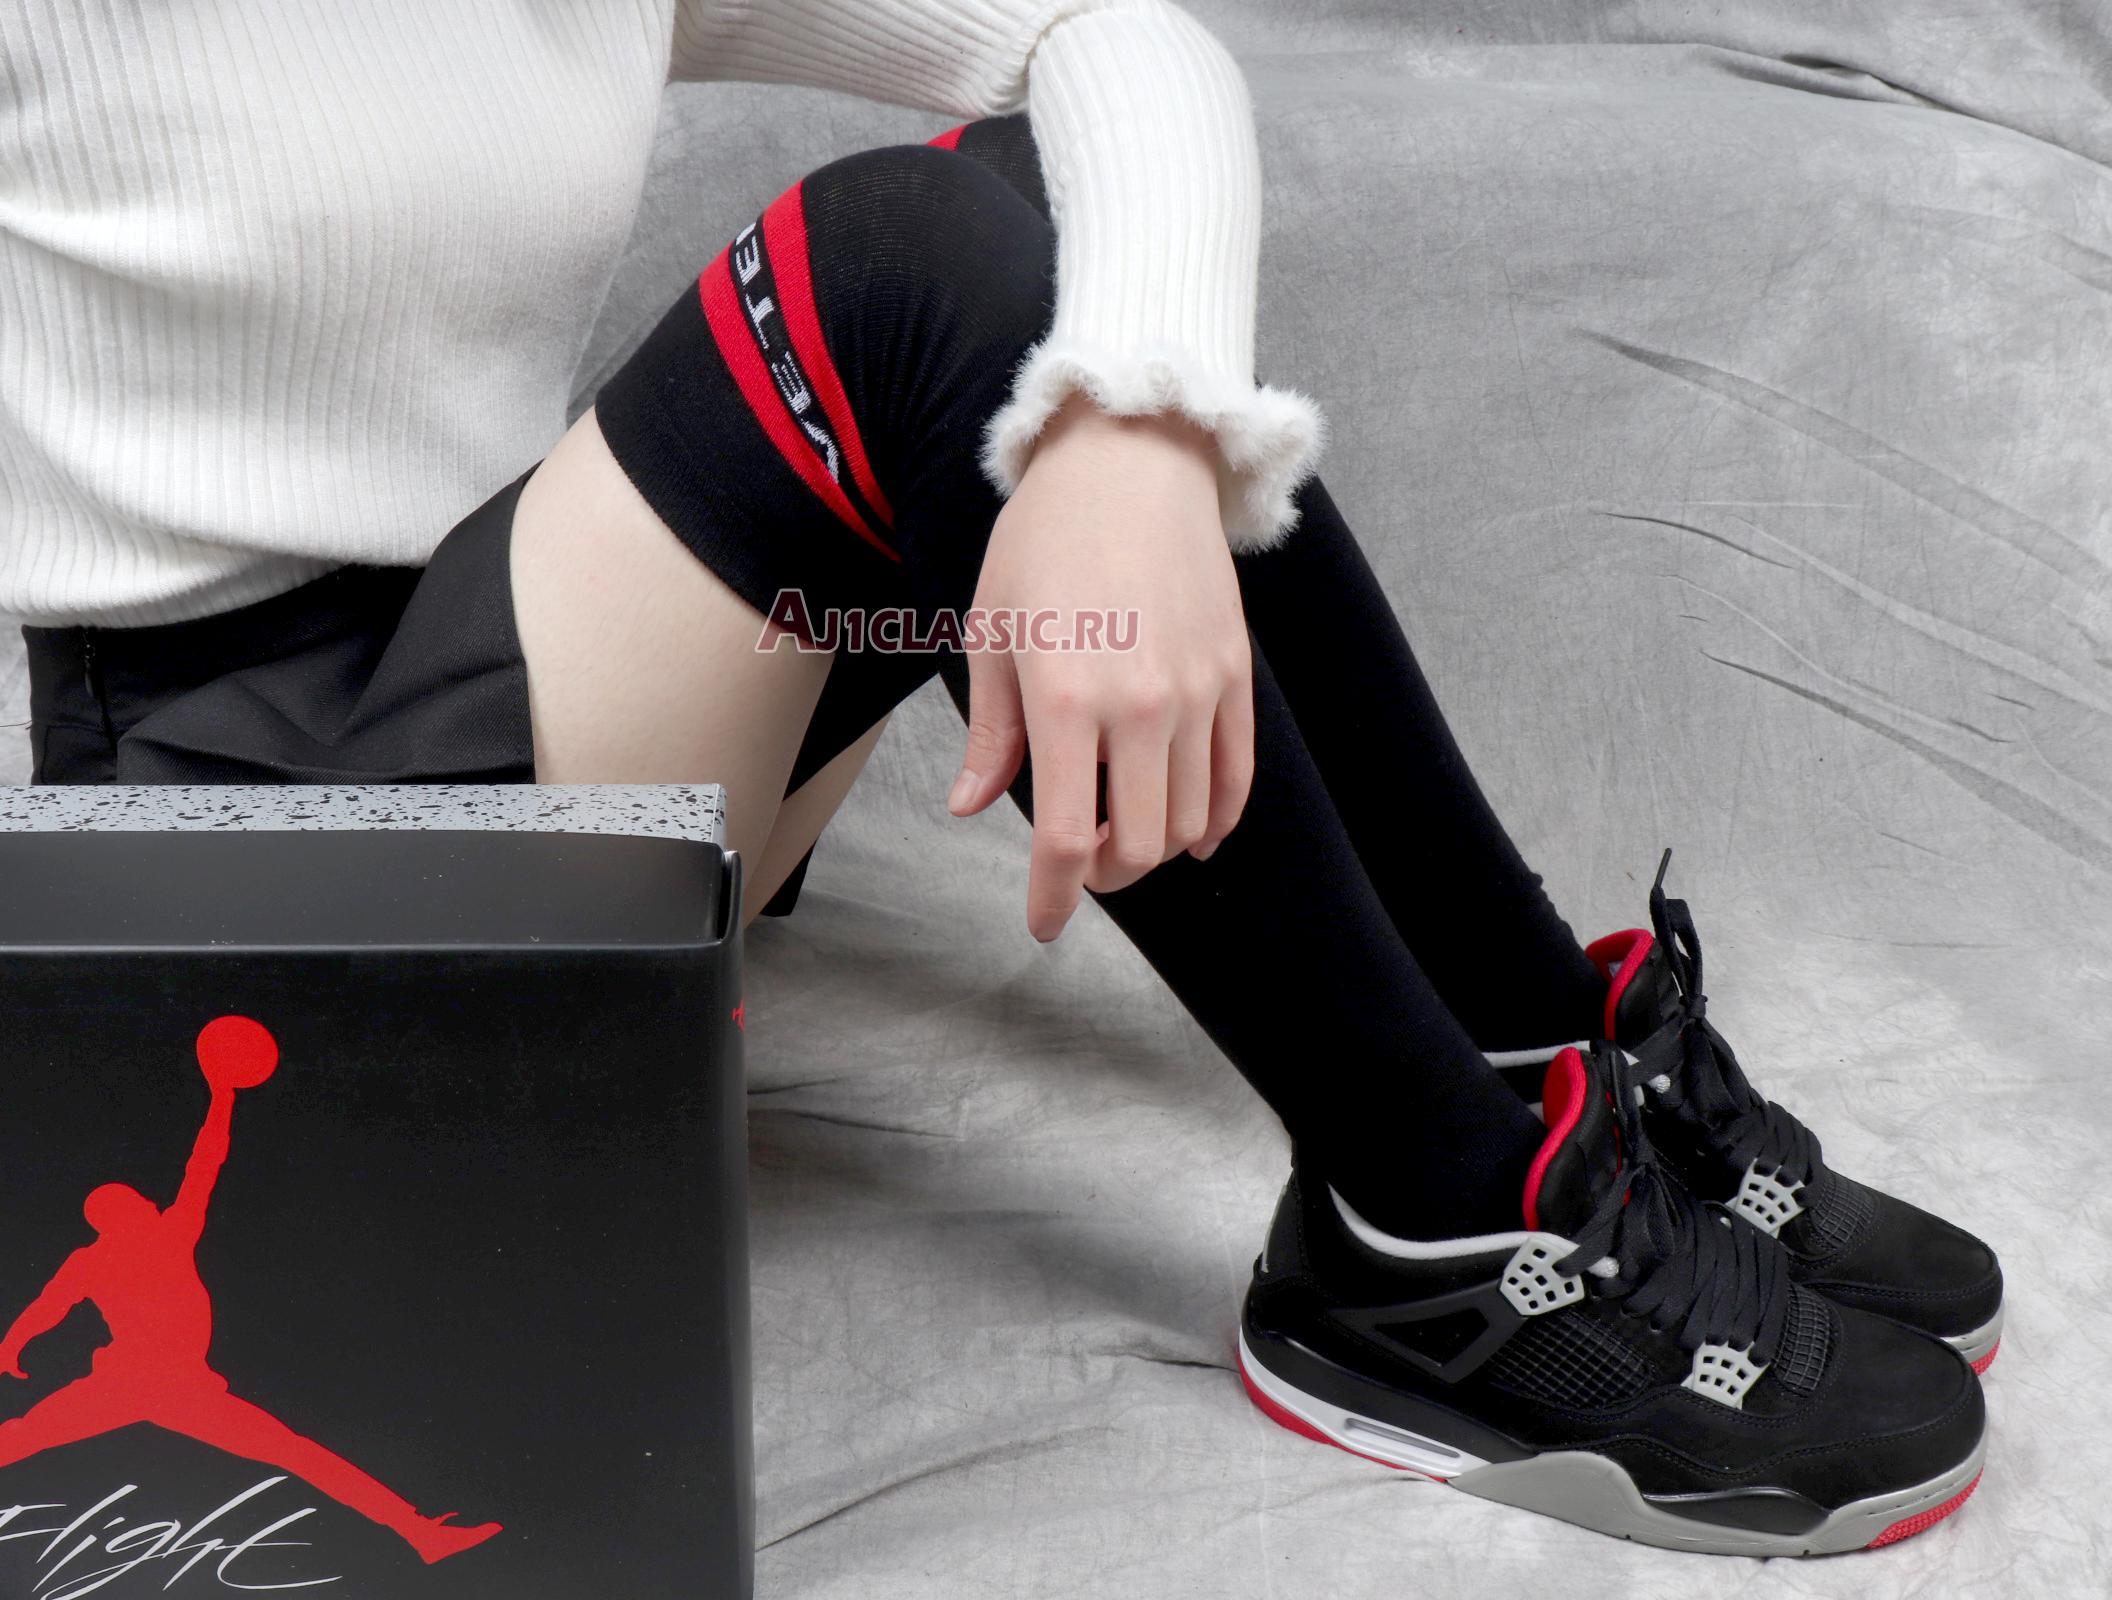 Air Jordan 4 Retro Bred 2012 308497-089 Black/Tech Grey-Black Sneakers